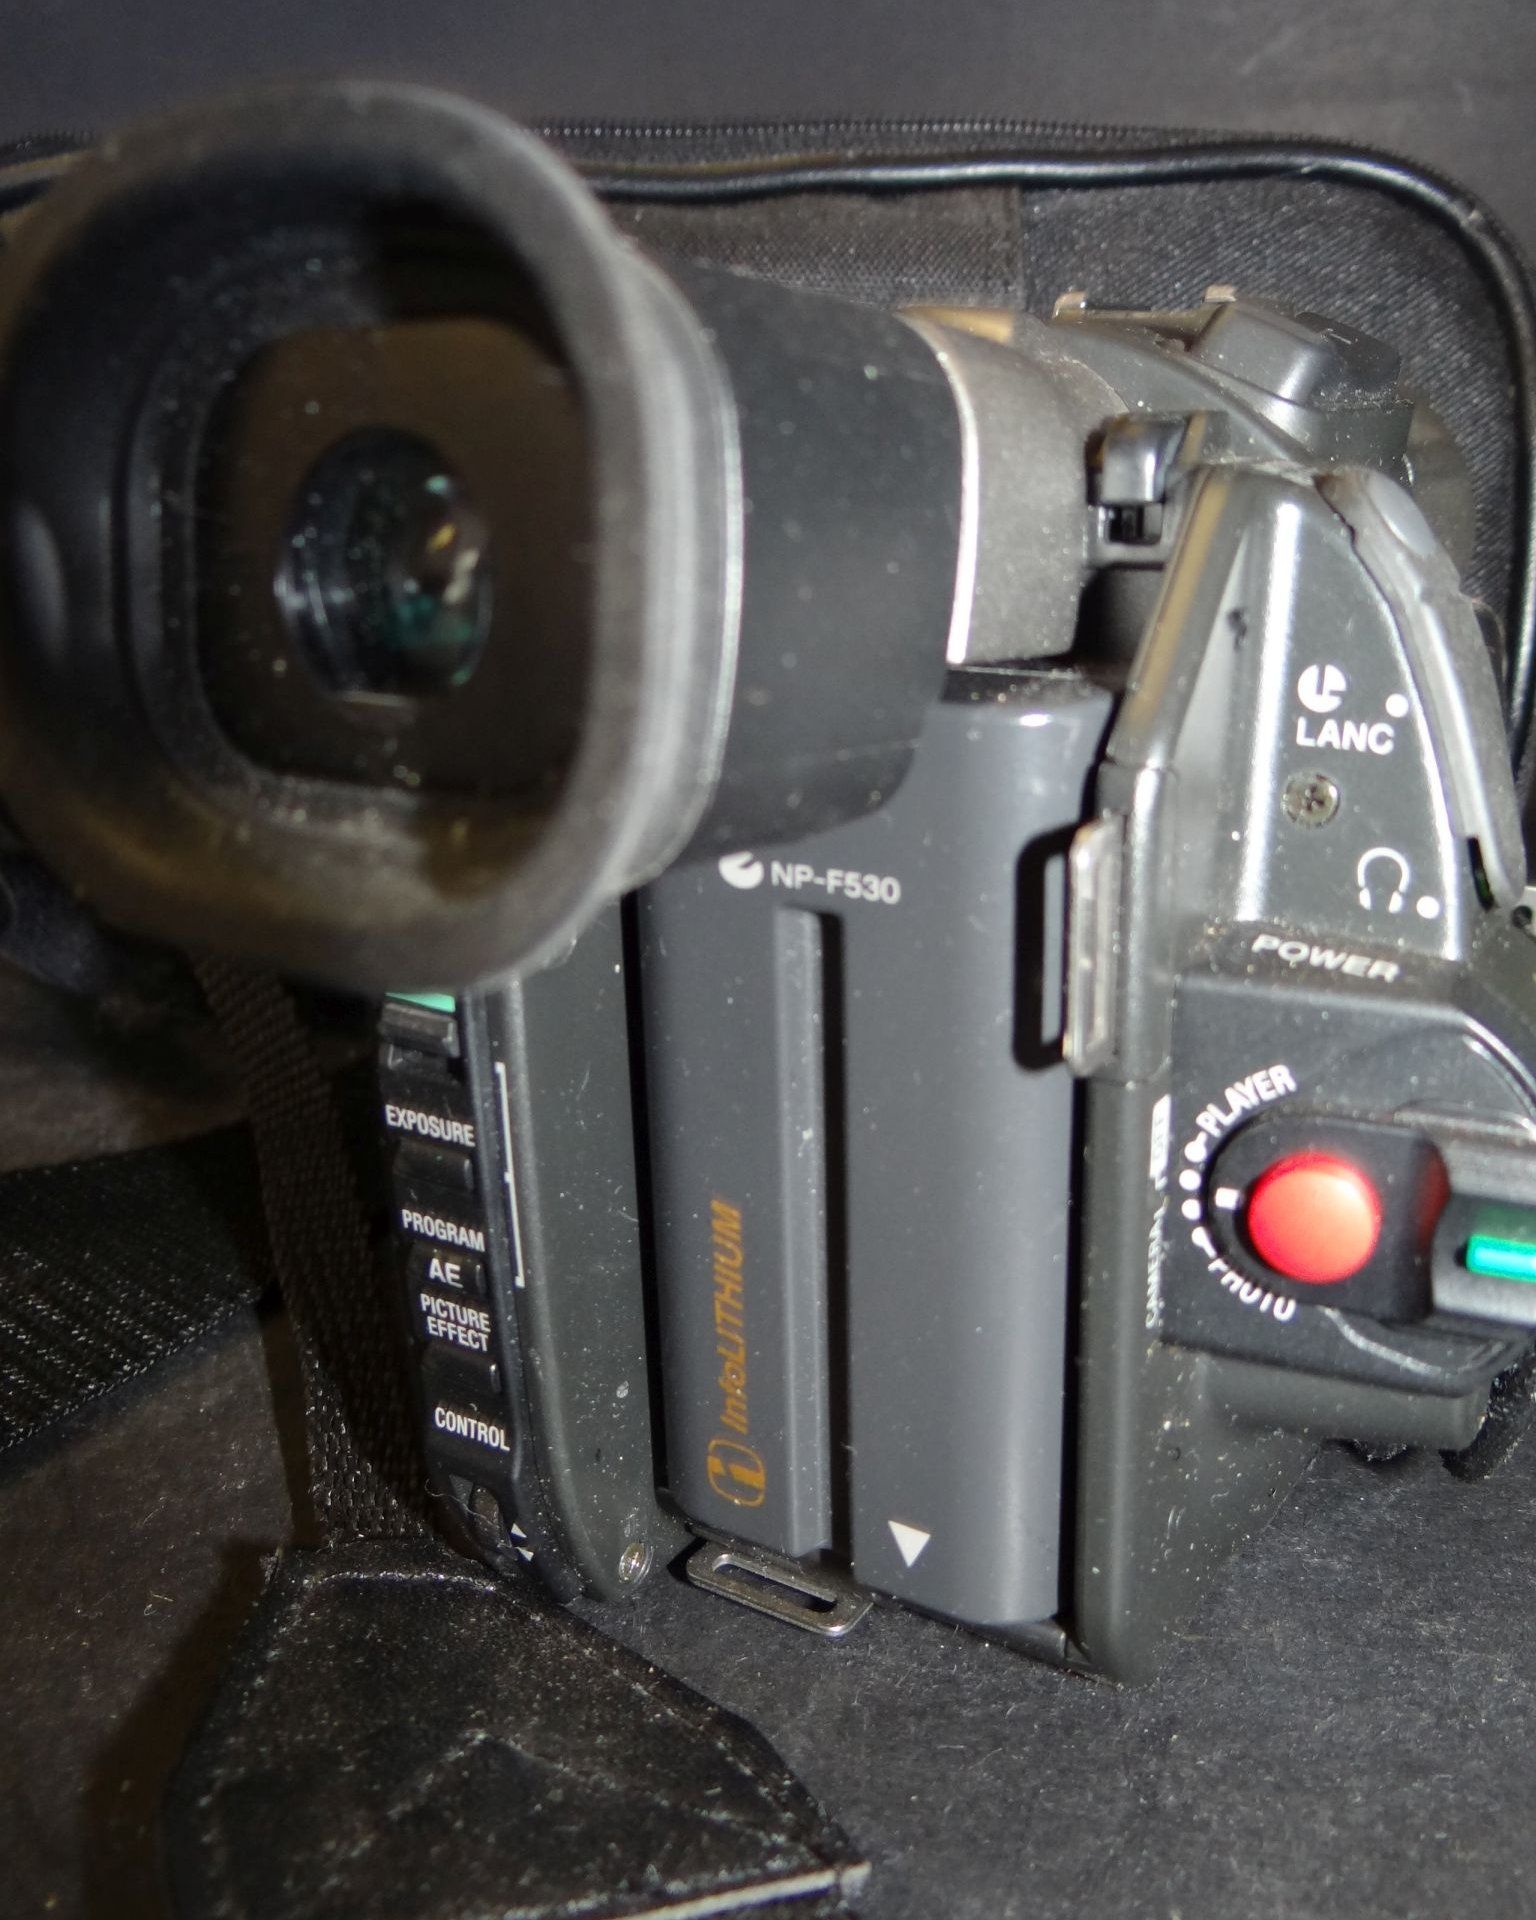 Sony Handycam Vision Mini DV in Tasche, optisch gut erhalten - Bild 4 aus 5